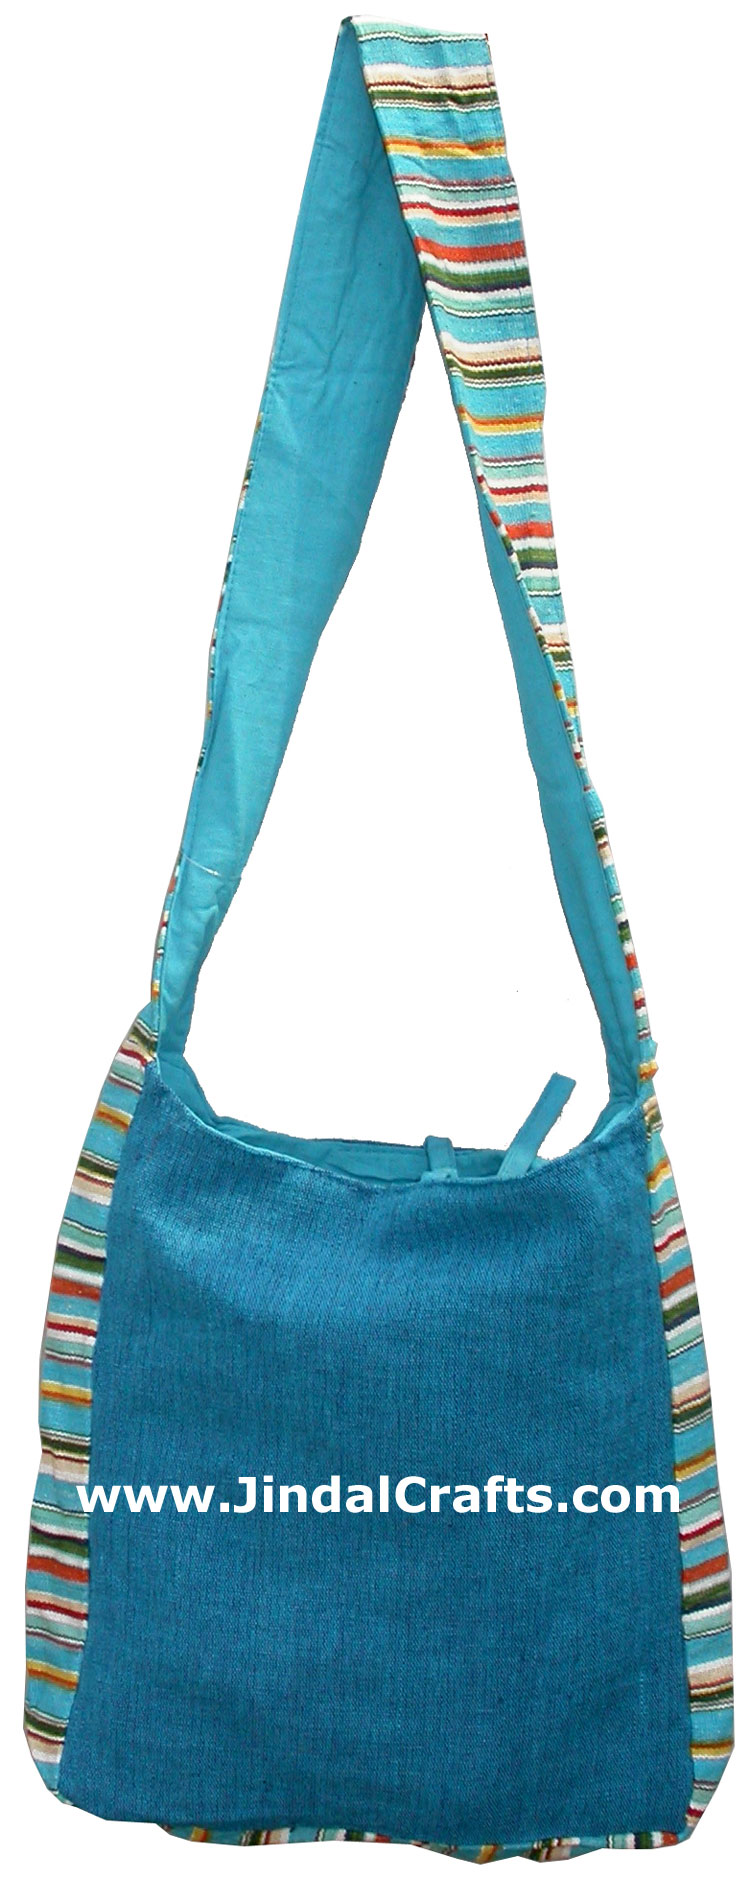 Colorful Hand Embroidered Shoulder Handbag India Art